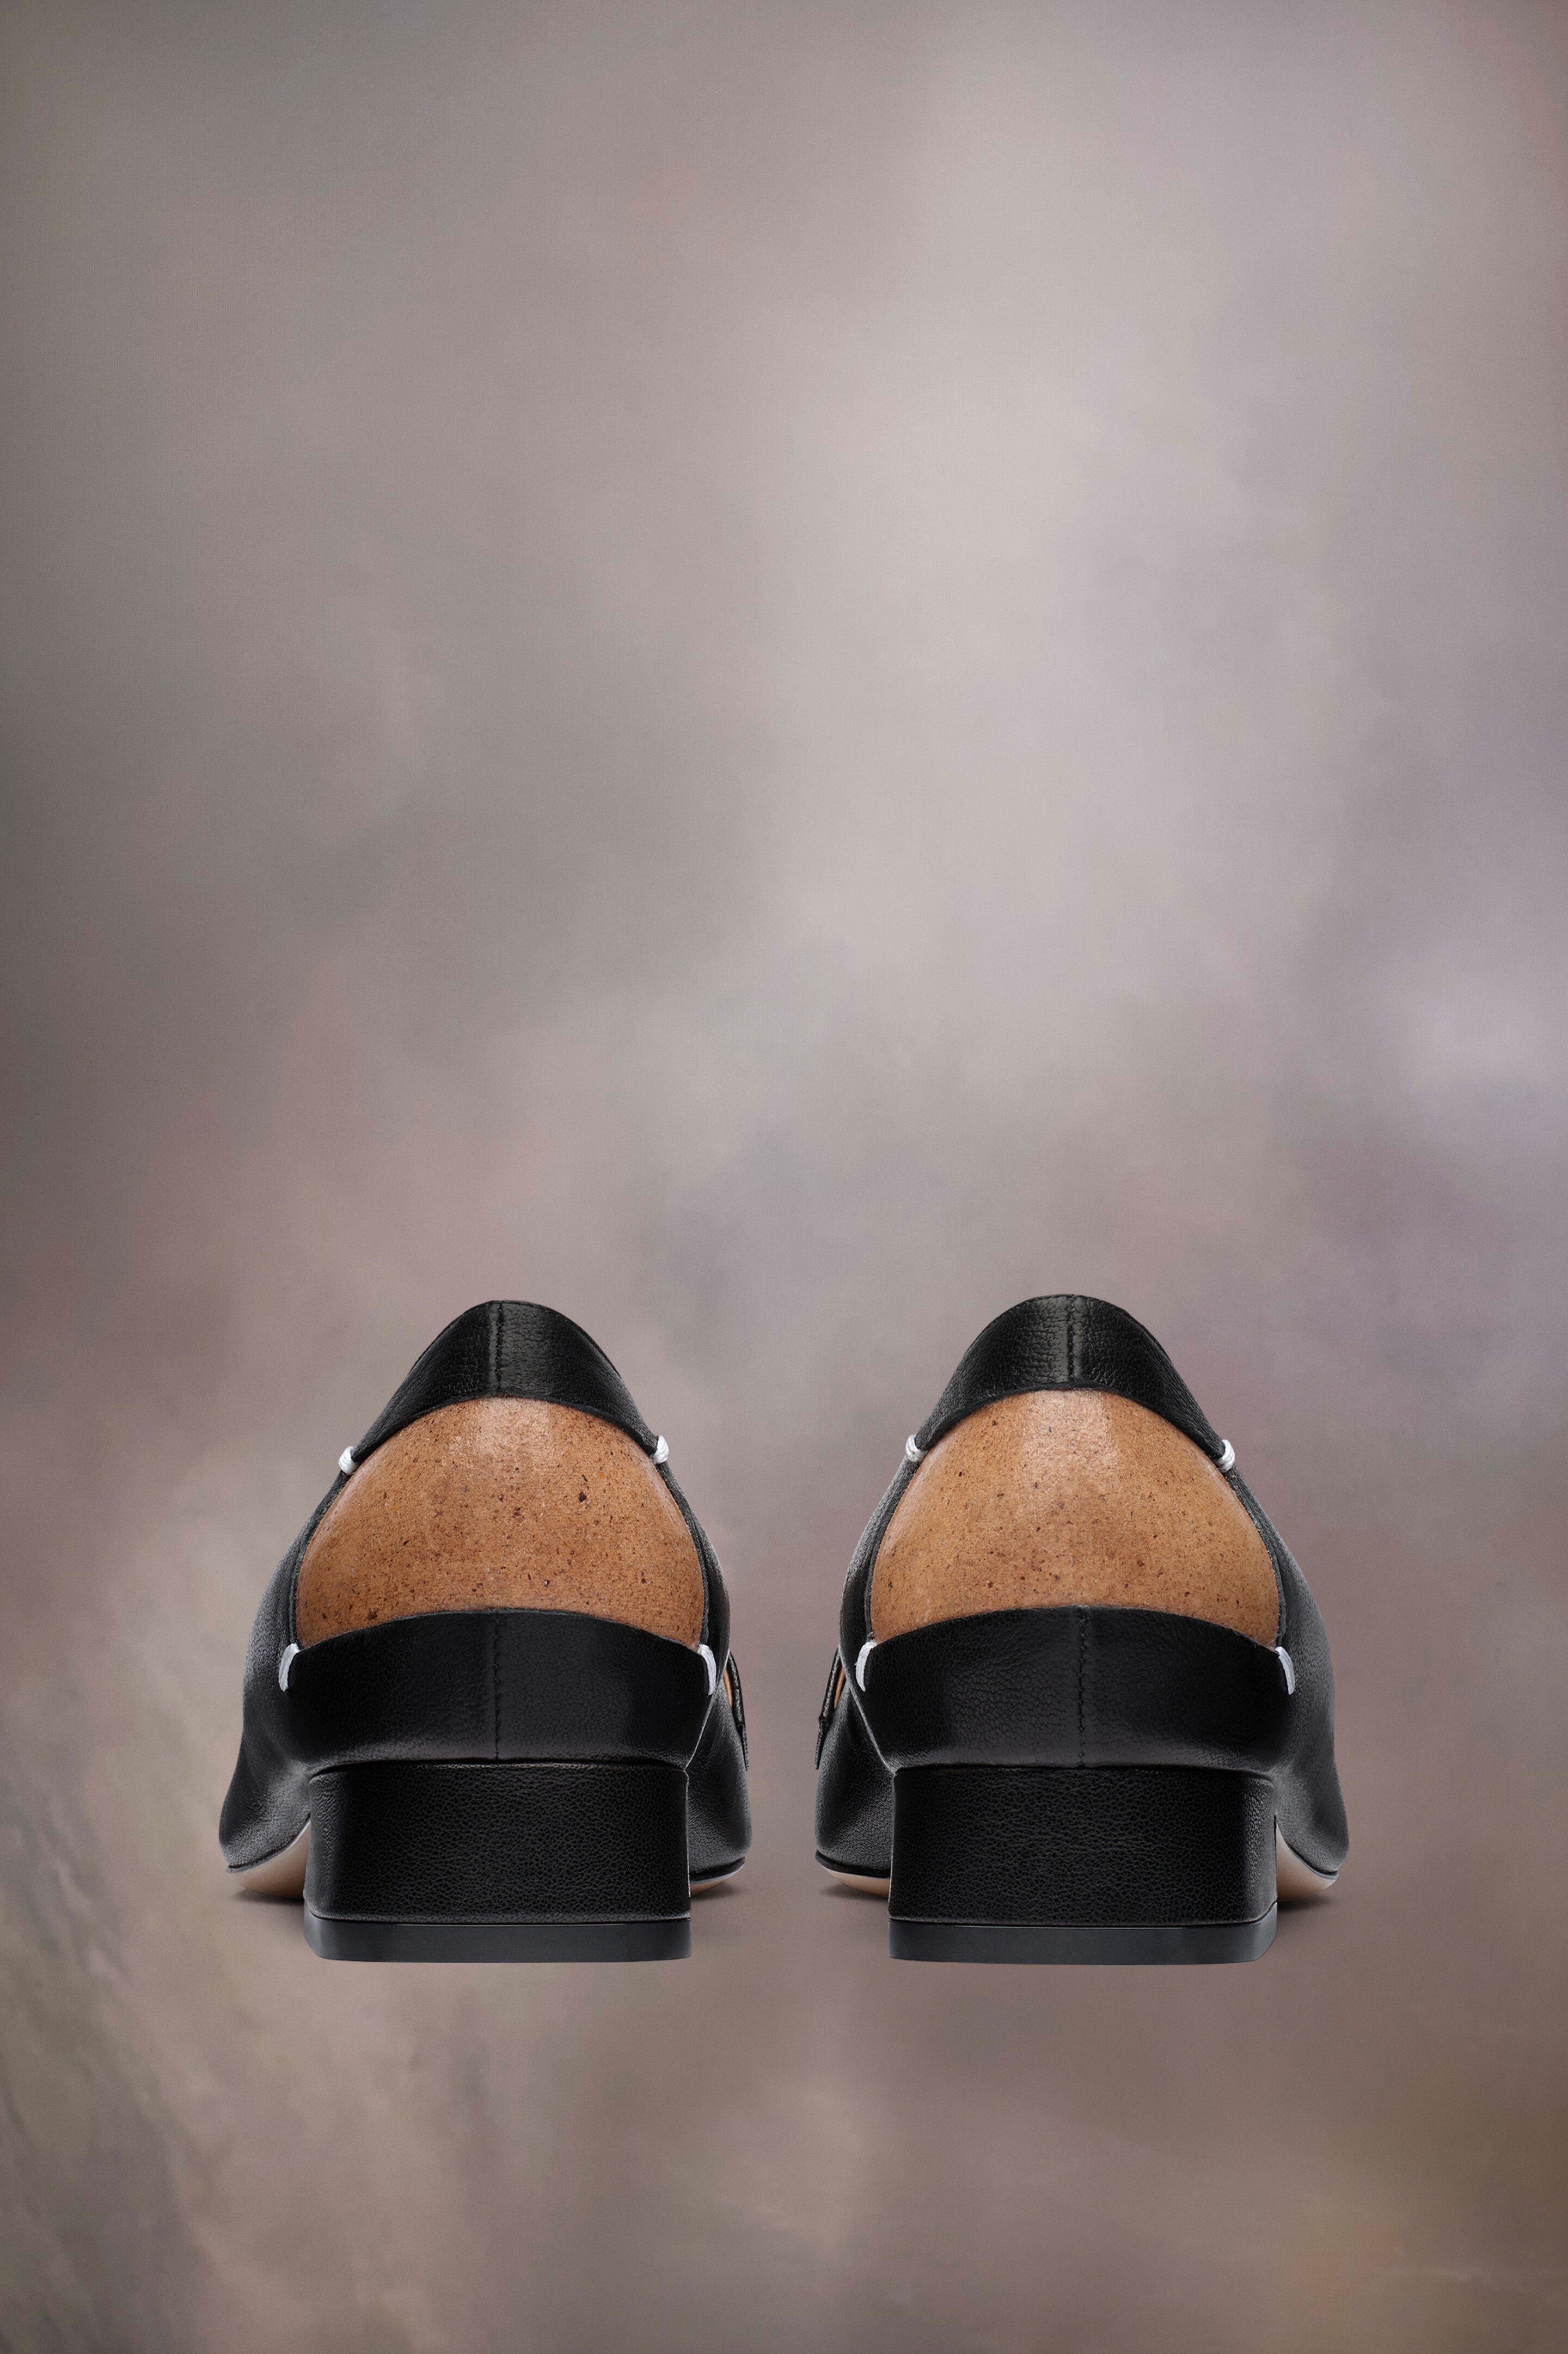 Maison Margiela Four stitches décortiqué loafers | REVERSIBLE